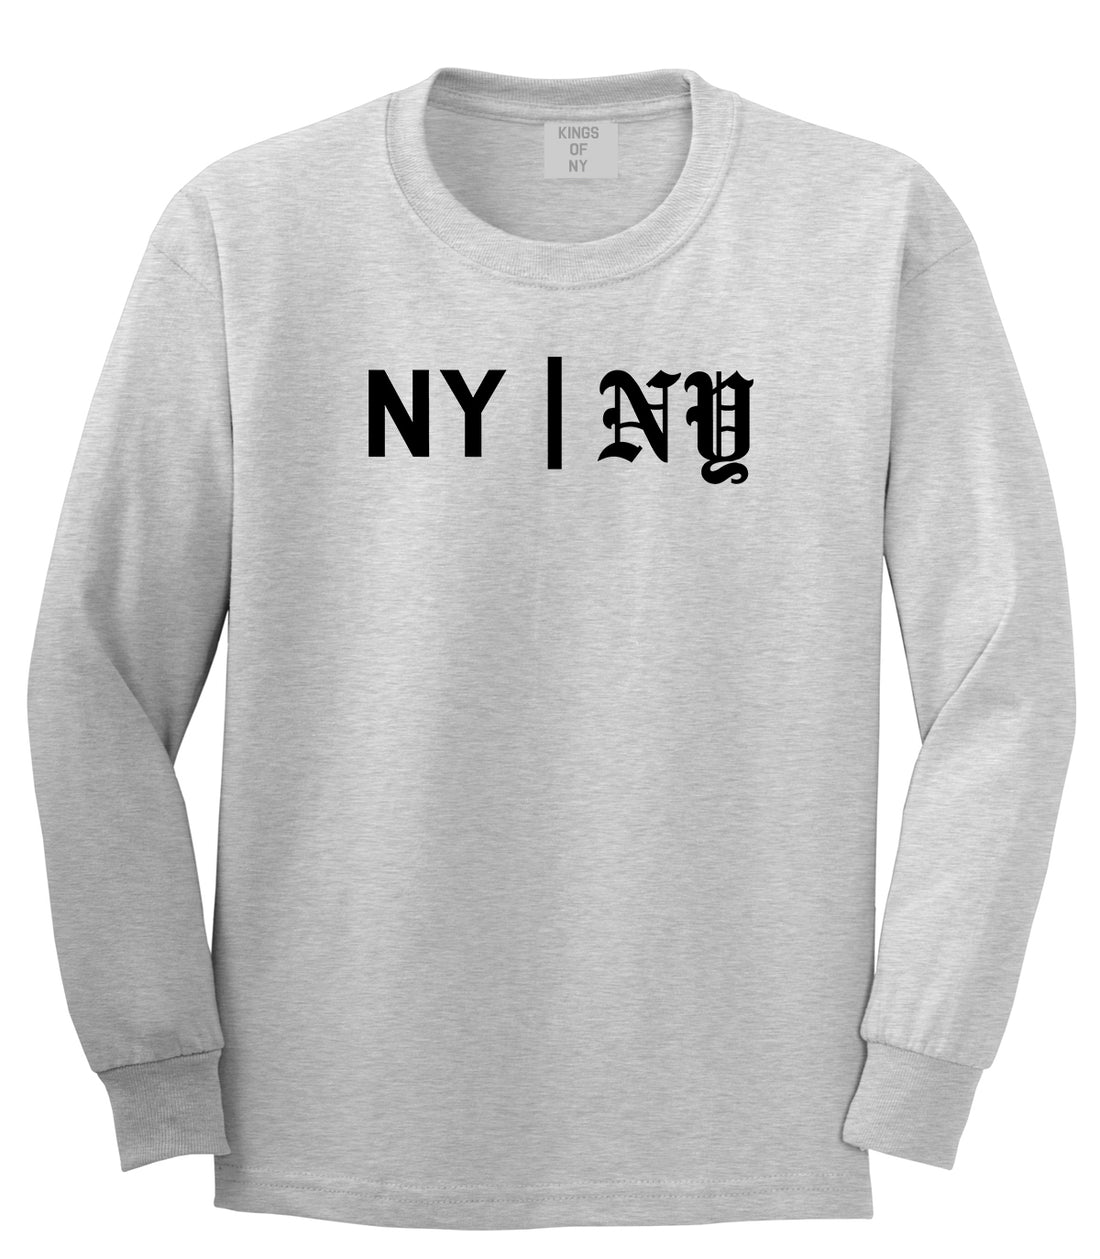 NY vs NY Mens Long Sleeve T-Shirt Grey